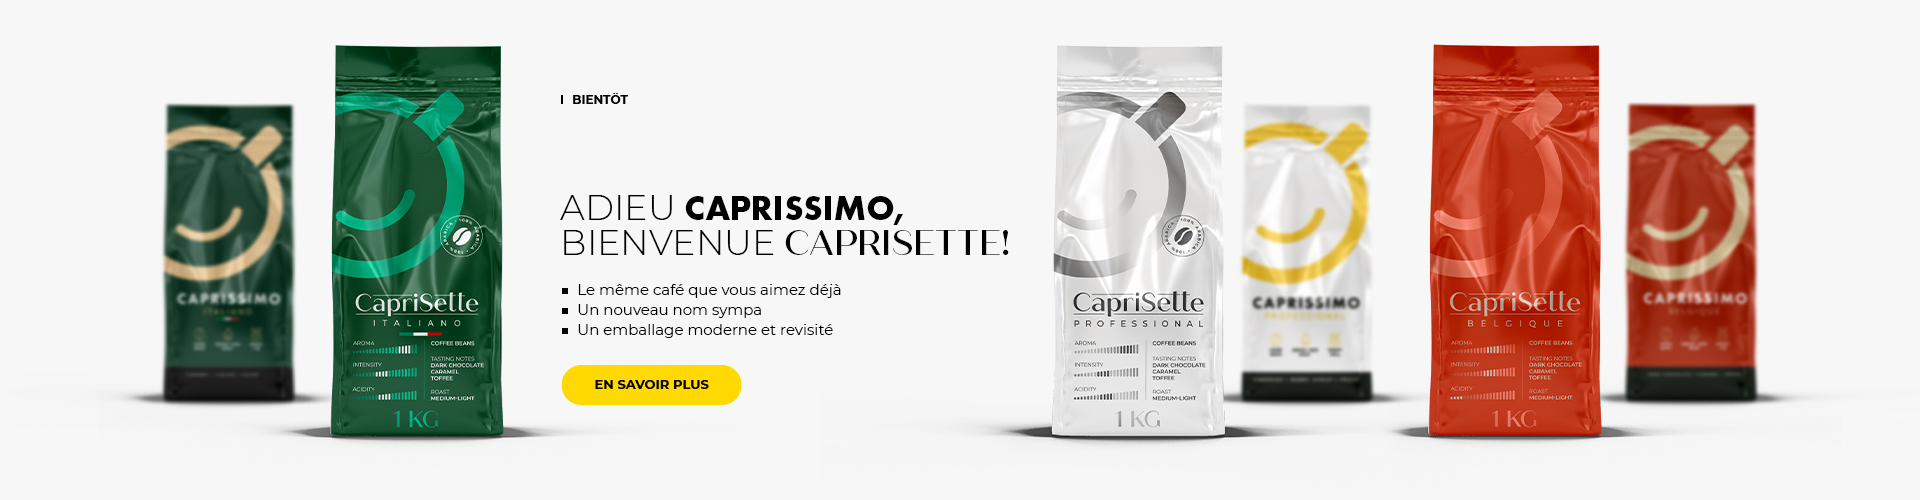 Salut Caprisette